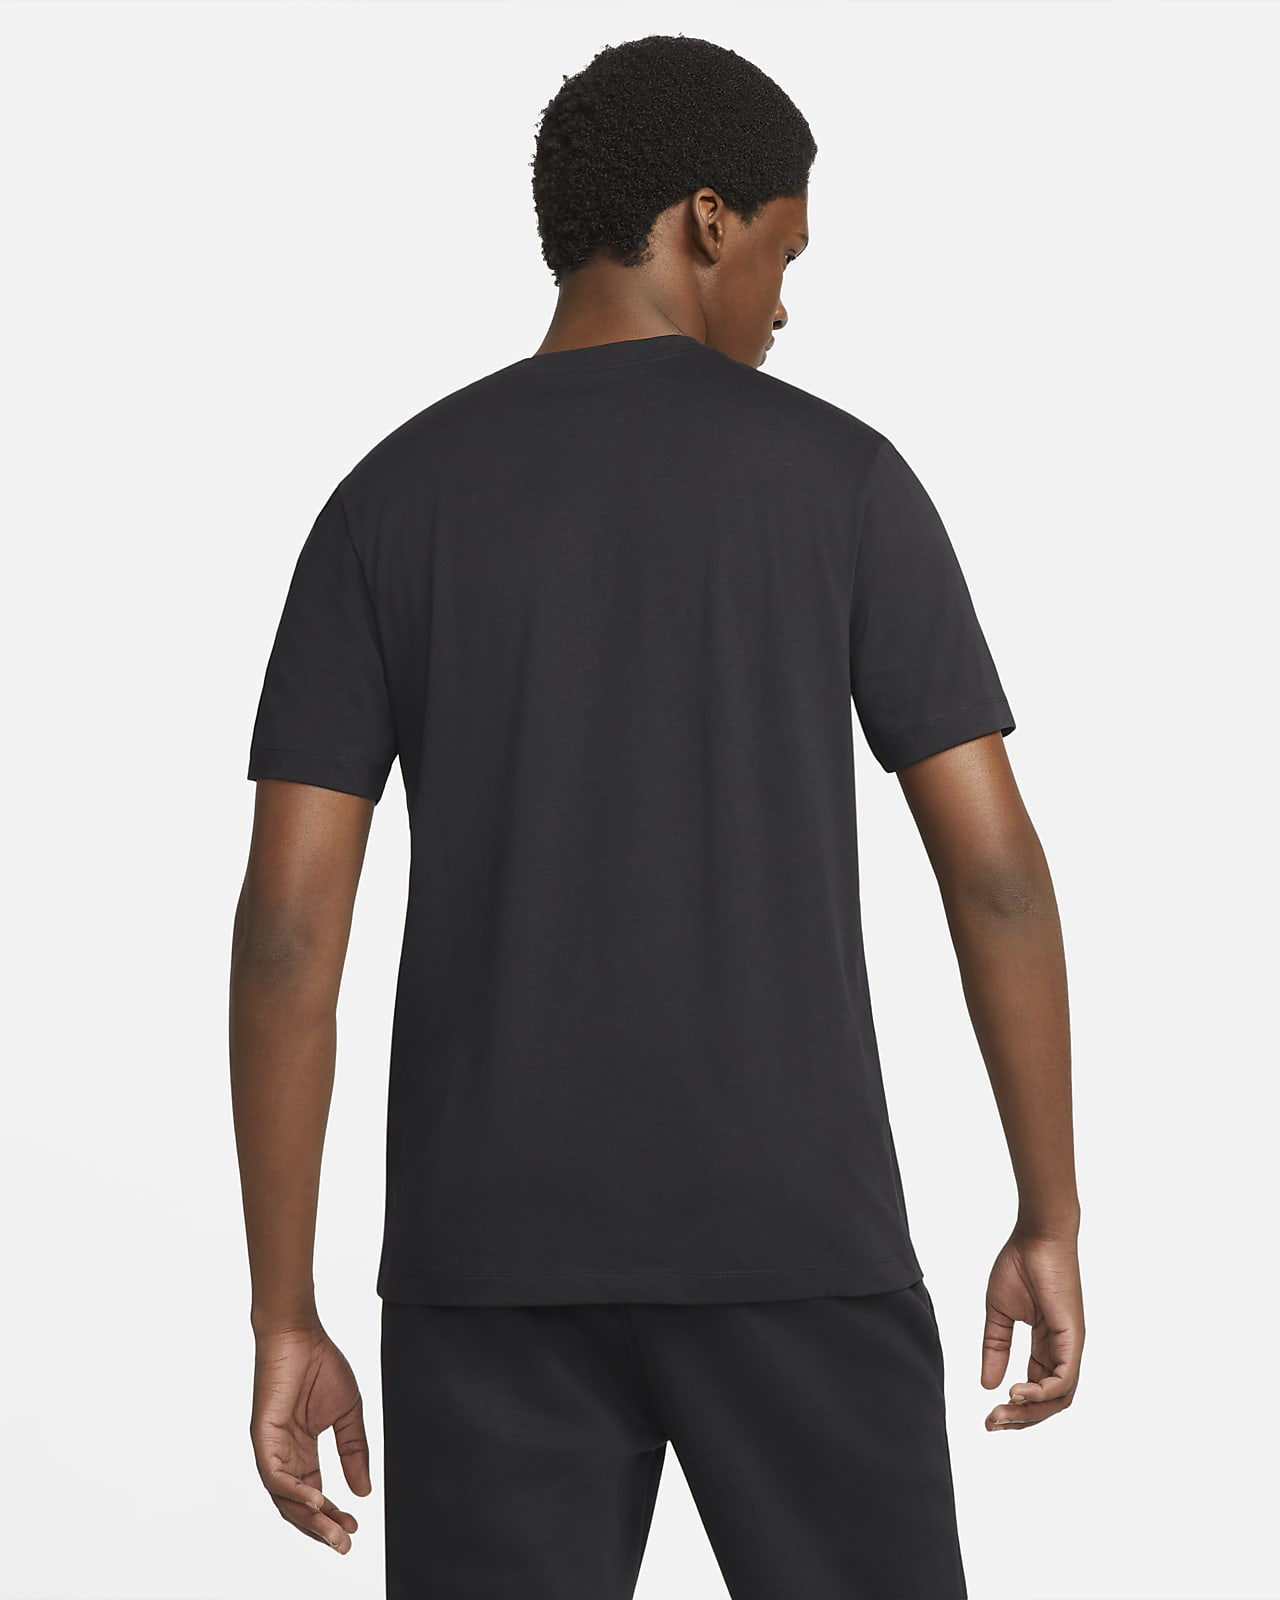 Nike Sportswear Swoosh Men's T-Shirt. Nike LU